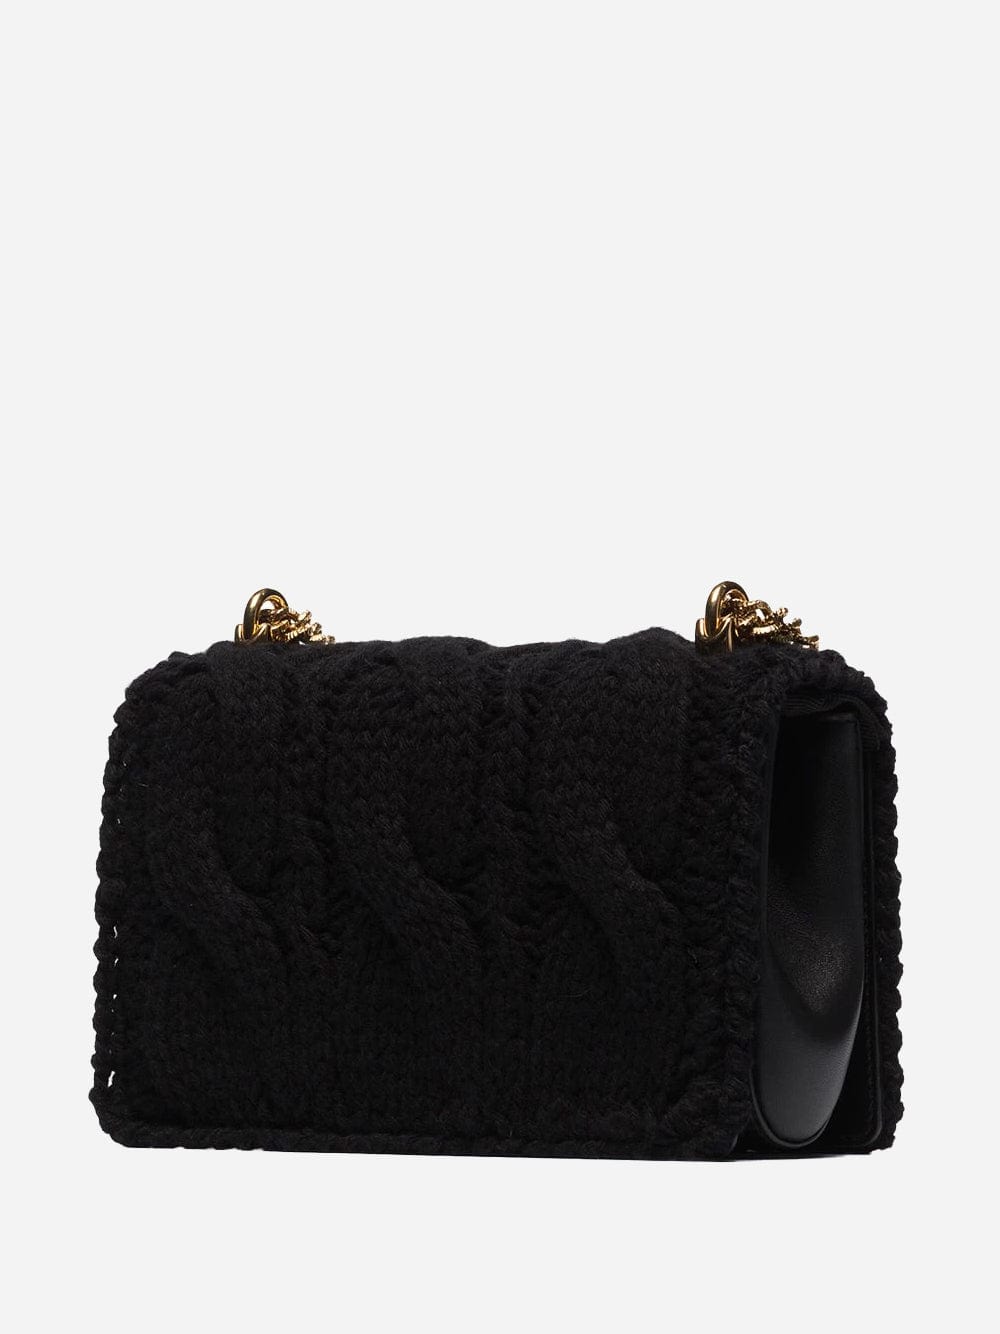 Dolce & Gabbana Knit Devotion Shoulder Bag